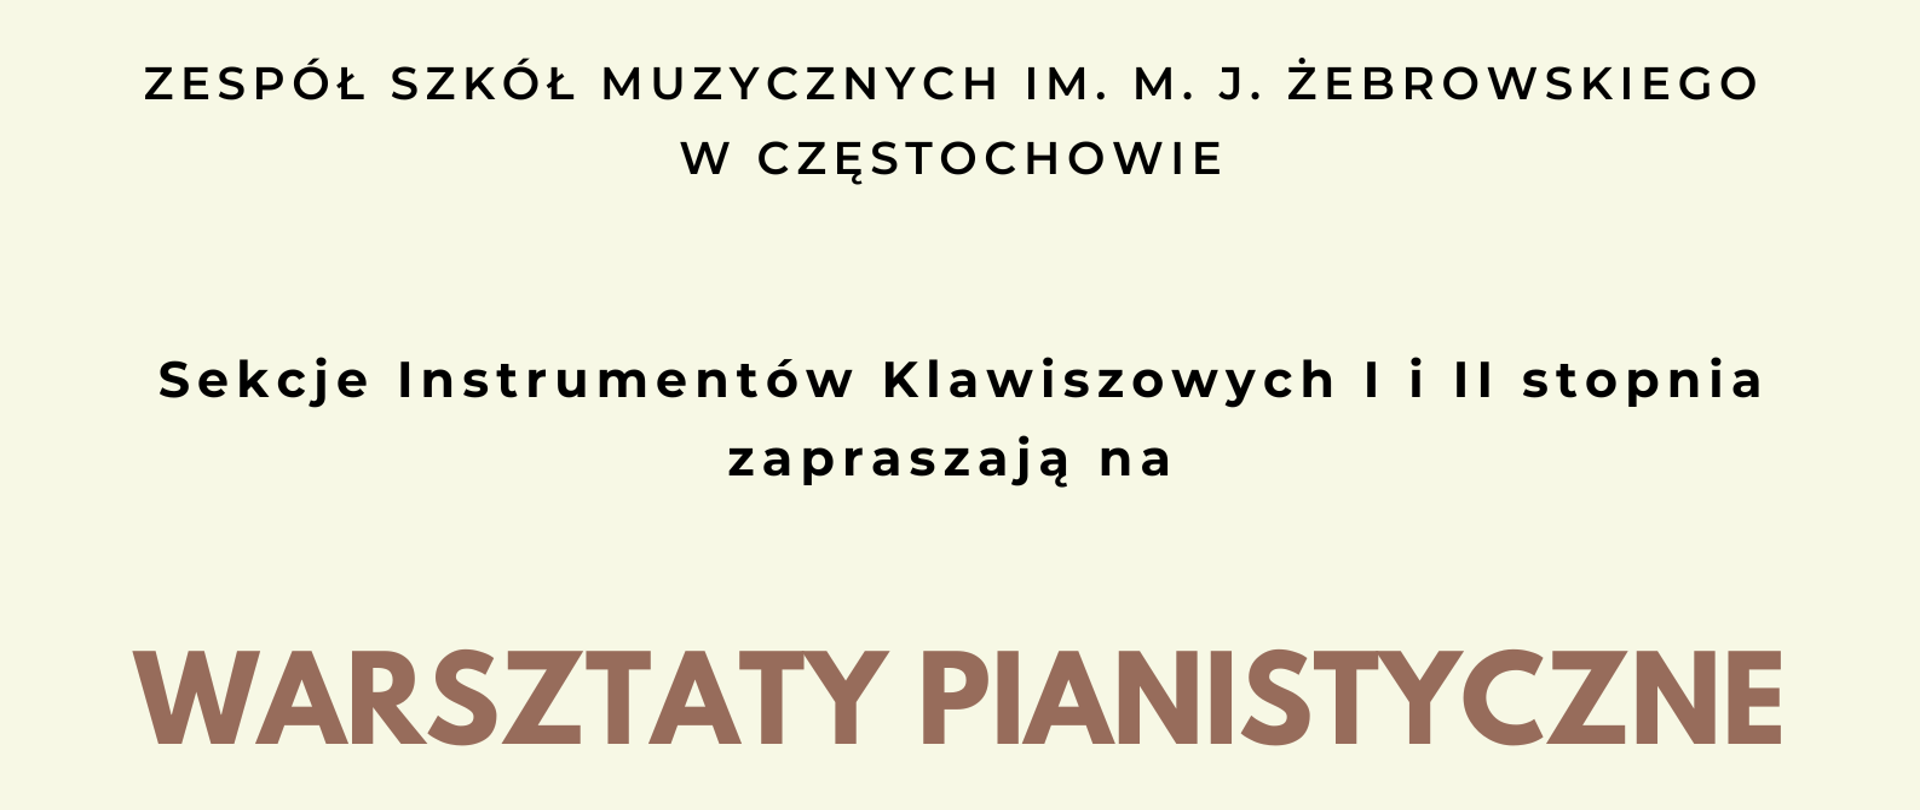 Na kremowym tle informacje o warsztatach pianistycznych, dacie, miejscu i godzinie. Z lewej strony zdjęcie profesora Roberta Marata przy fortepianie